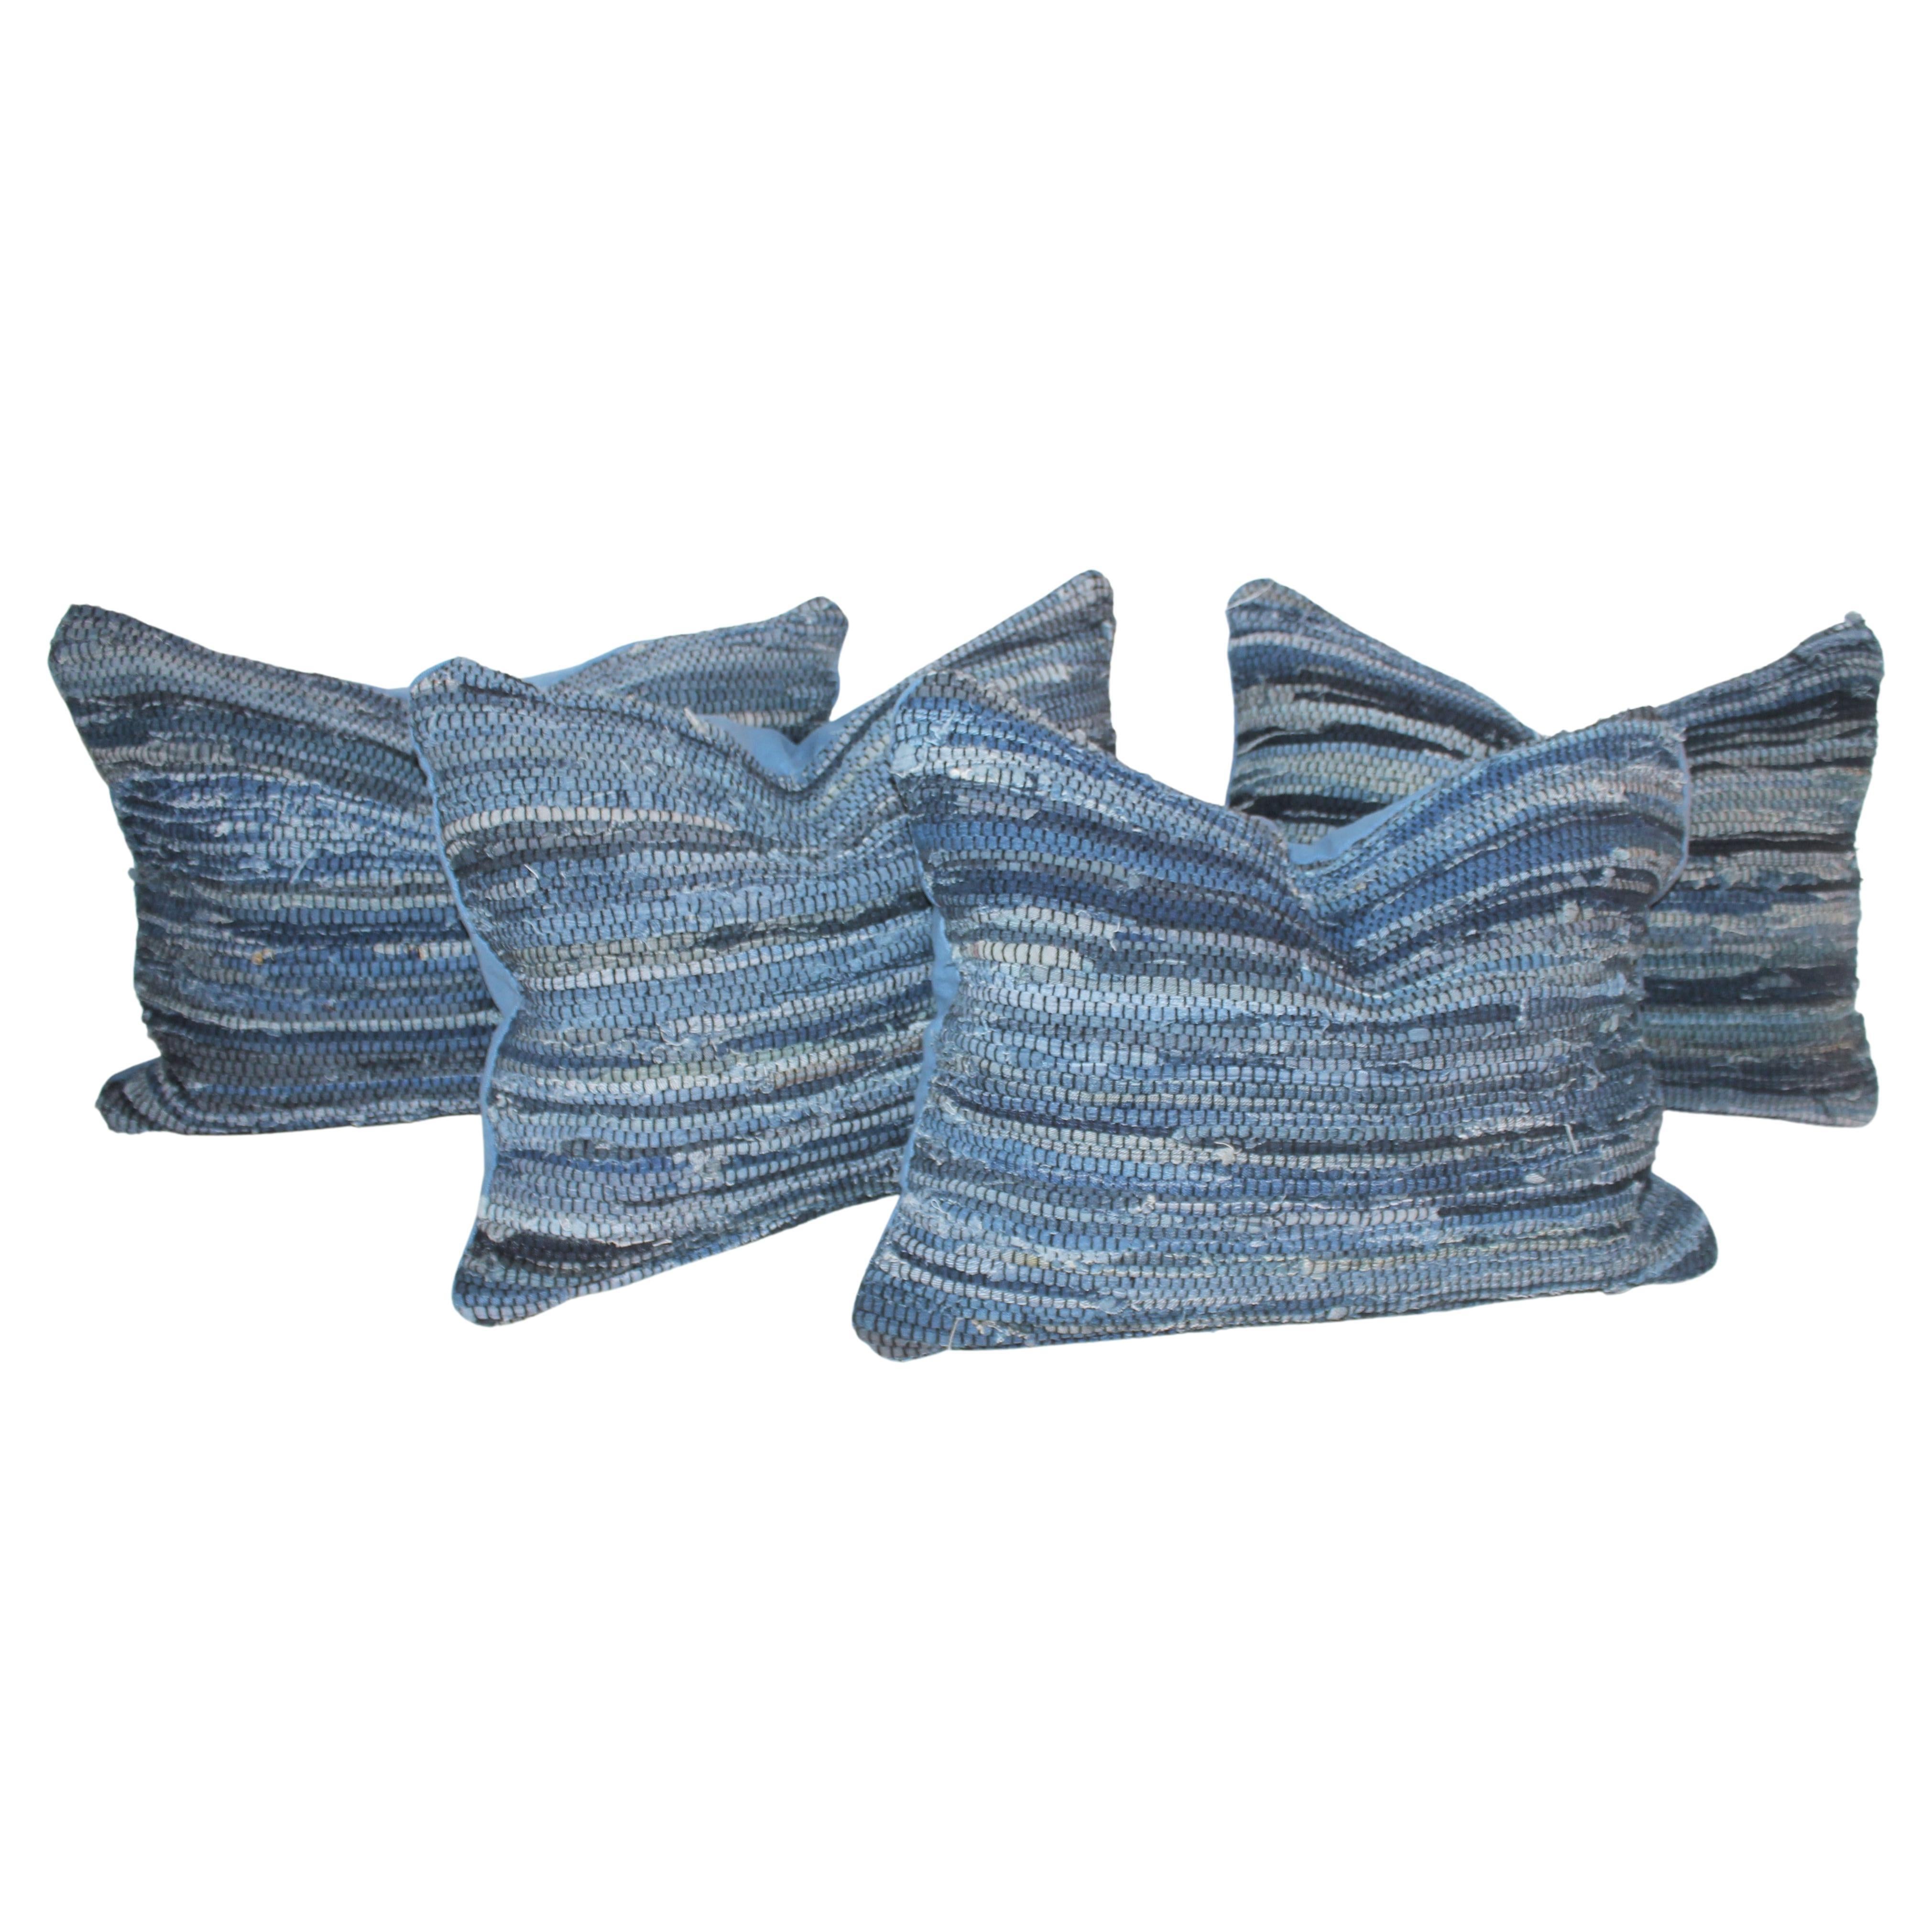 Paire de coussins en textile de tapis bleu vintage faits sur mesure. (2 ensembles disponibles)
 Les 4 articles peuvent être achetés au prix de 595,00 $ par ensemble de 2 coussins. Les oreillers sont dotés d'inserts en plumes et en brindilles et